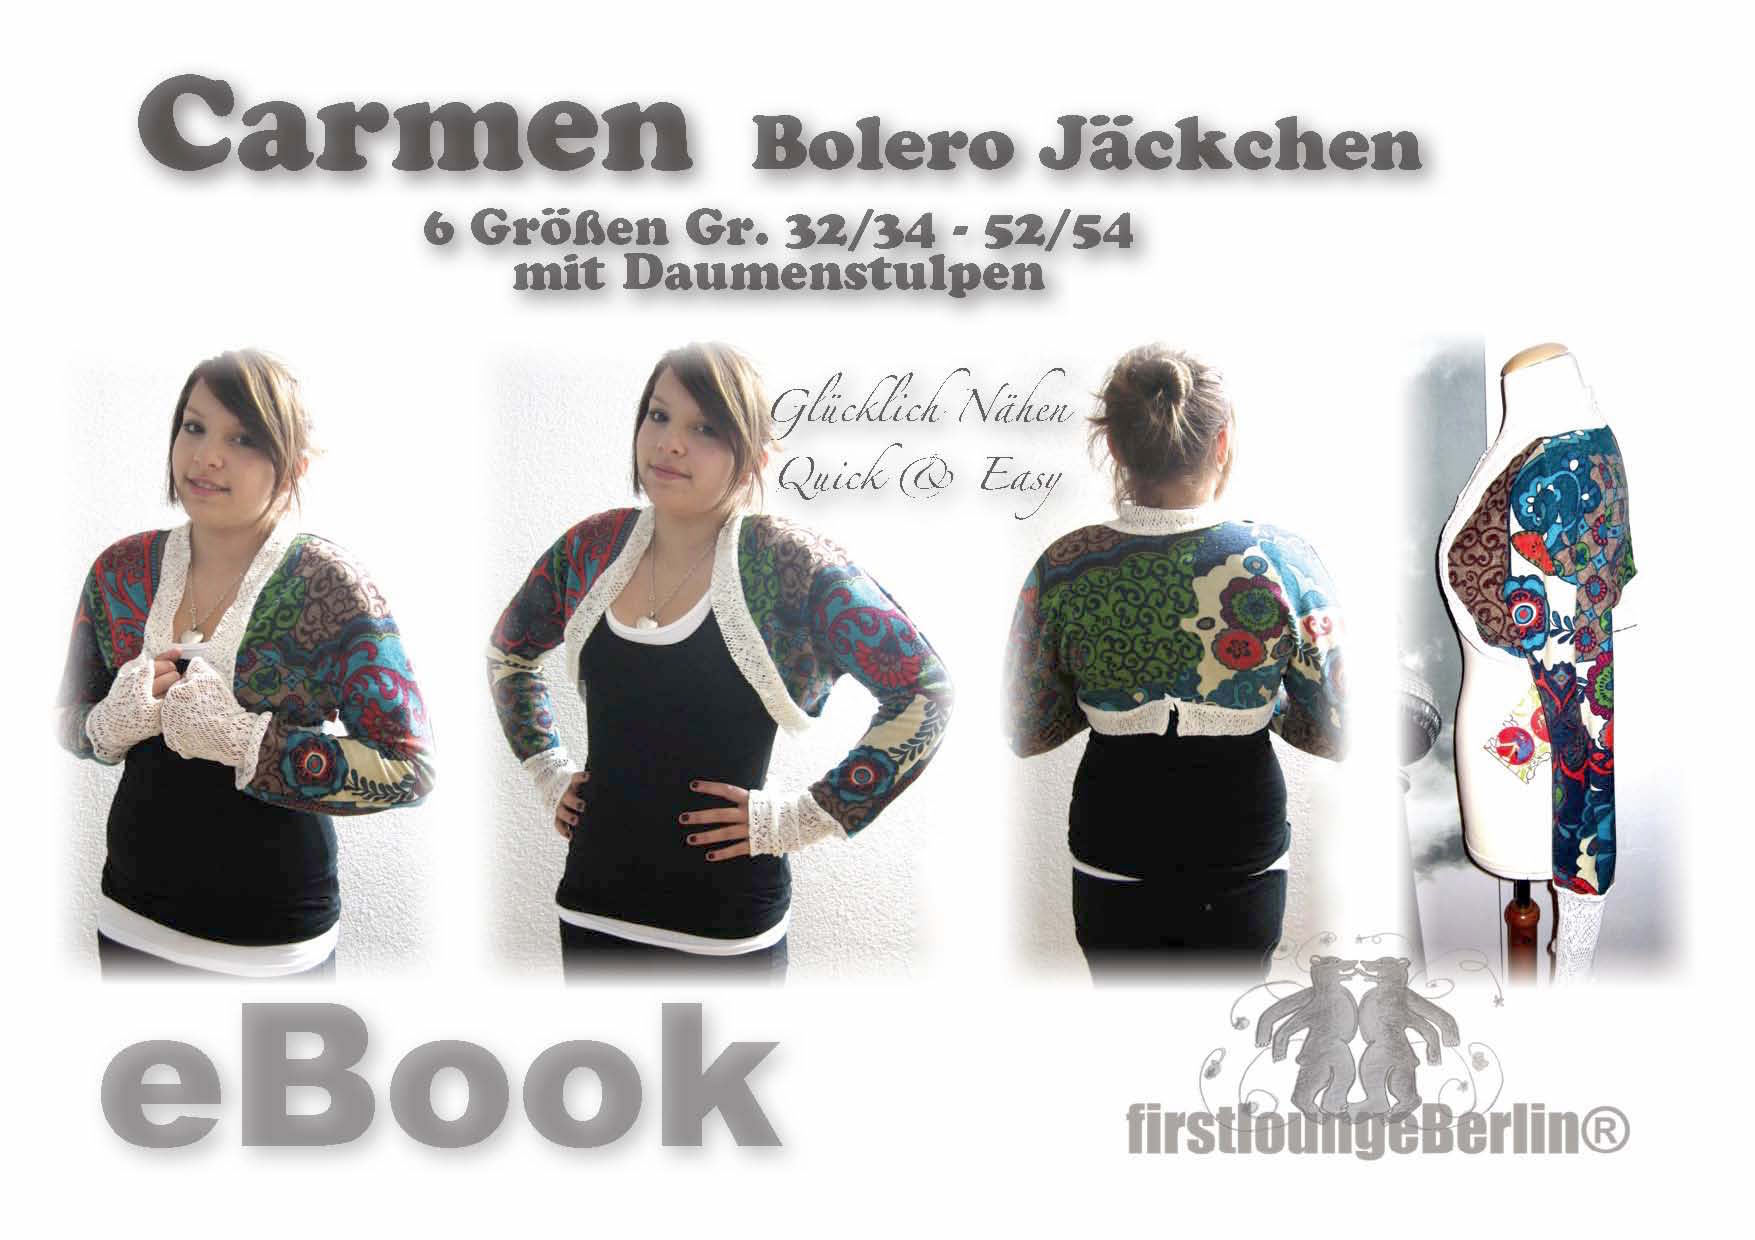 Carmen für Bolero JäckchenNähanleitung mit Schnittmuster in 6 Größen Gr. 32-54 [Download]